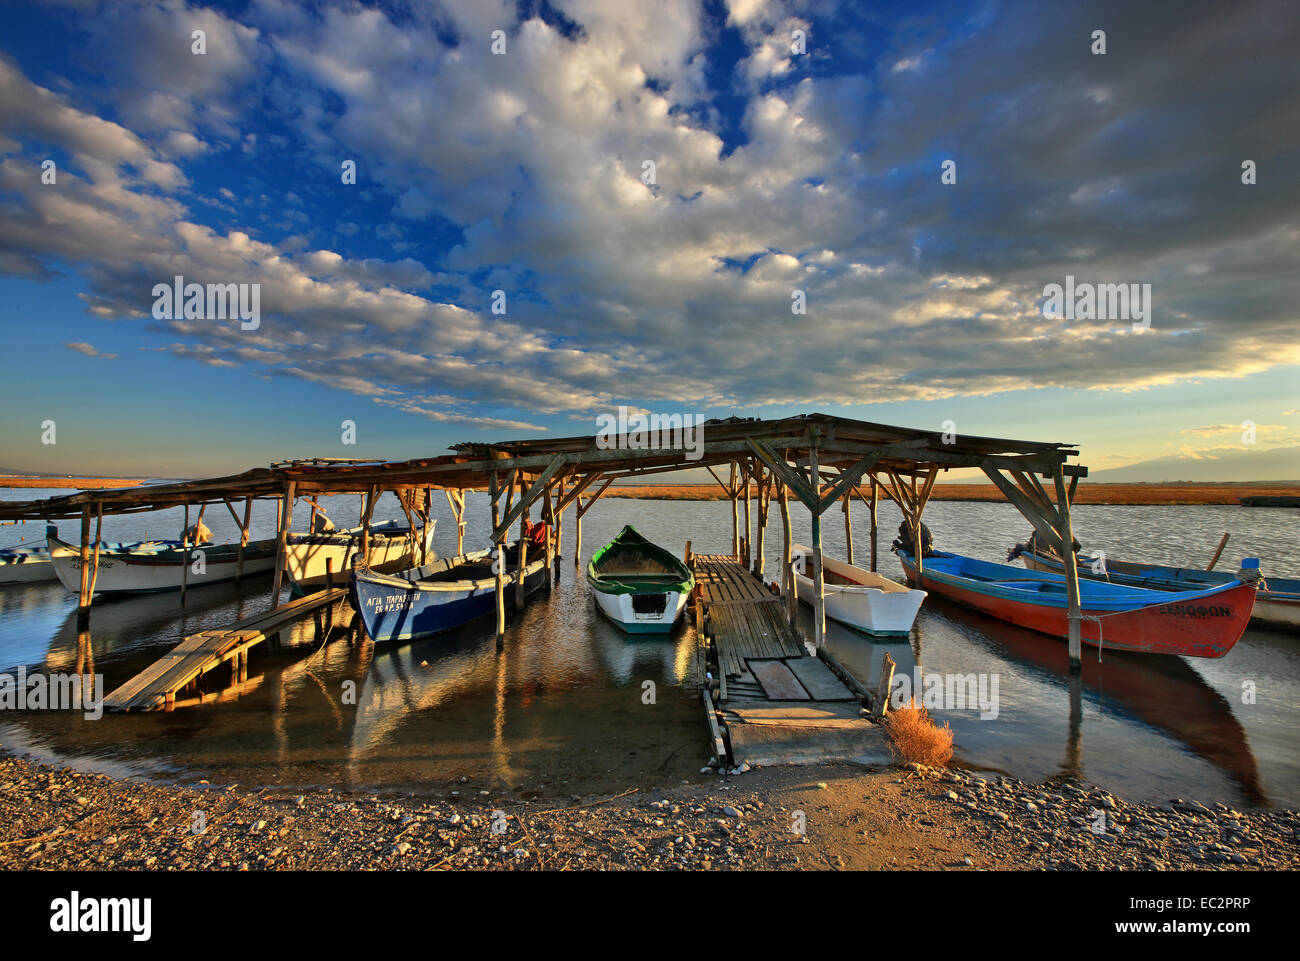 Angelboote/Fischerboote am Delta des Aliakmonas Fluß, Pieria - Imathia, Mazedonien, Griechenland. Stockfoto